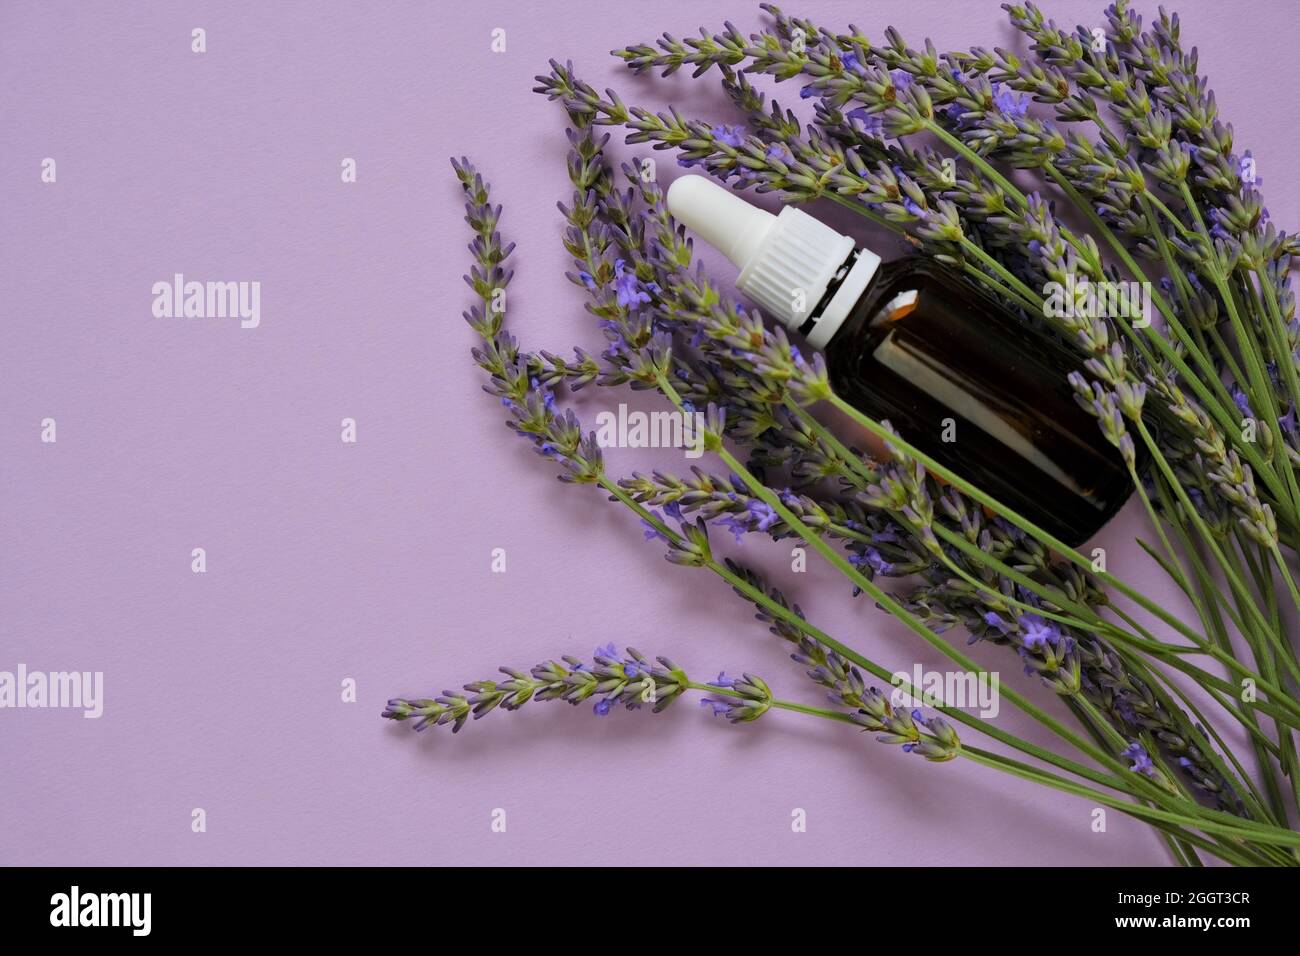 Ätherisches Lavendelöl.Glasflasche und Lavendelblüten auf einem Flieder background.Organic ätherisches Öl. Natürliches ätherisches Öl.natürliche Biokosmetik Stockfoto